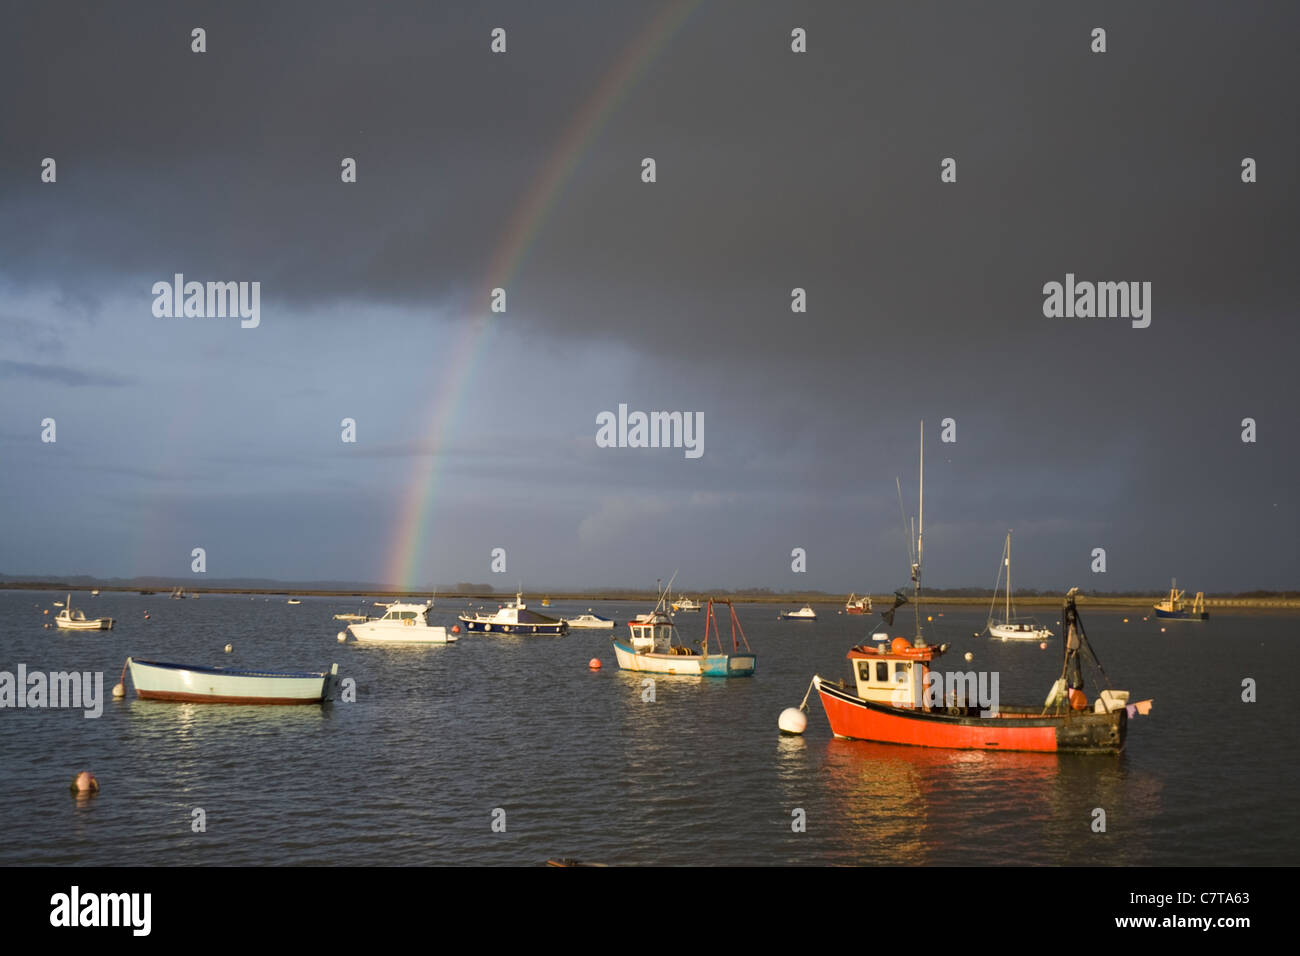 Un arcobaleno sopra l'acqua in un meditabondo, cielo tempestoso. Foto Stock